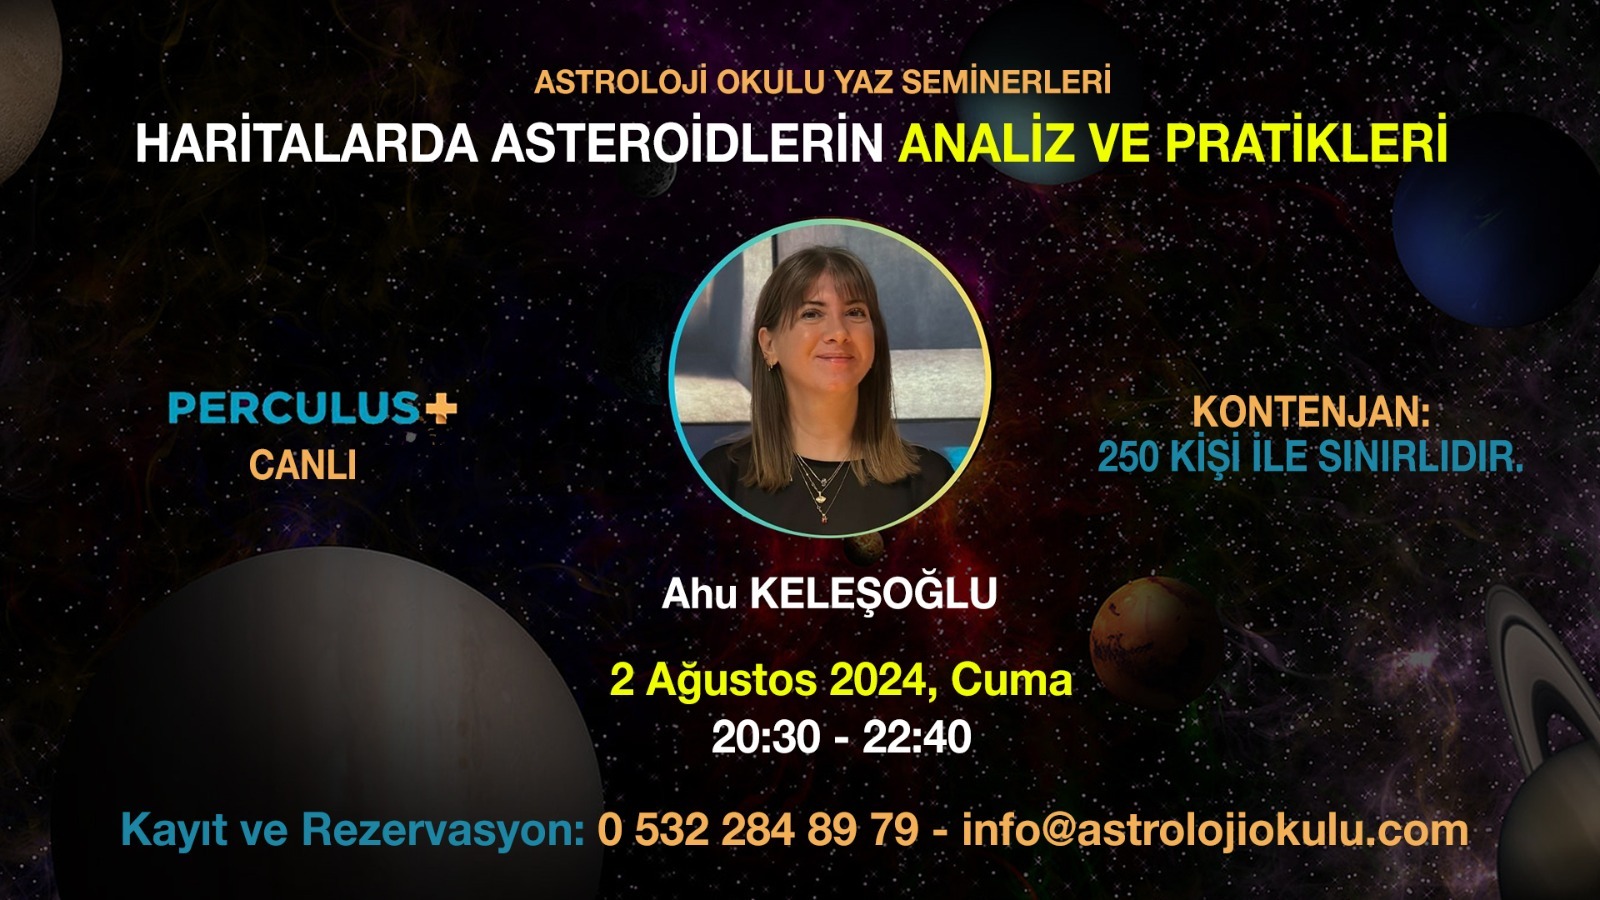 (Türkçe) Haritalarda Asteroidlerin Analiz ve Pratikleri – AHU KELEŞOĞLU